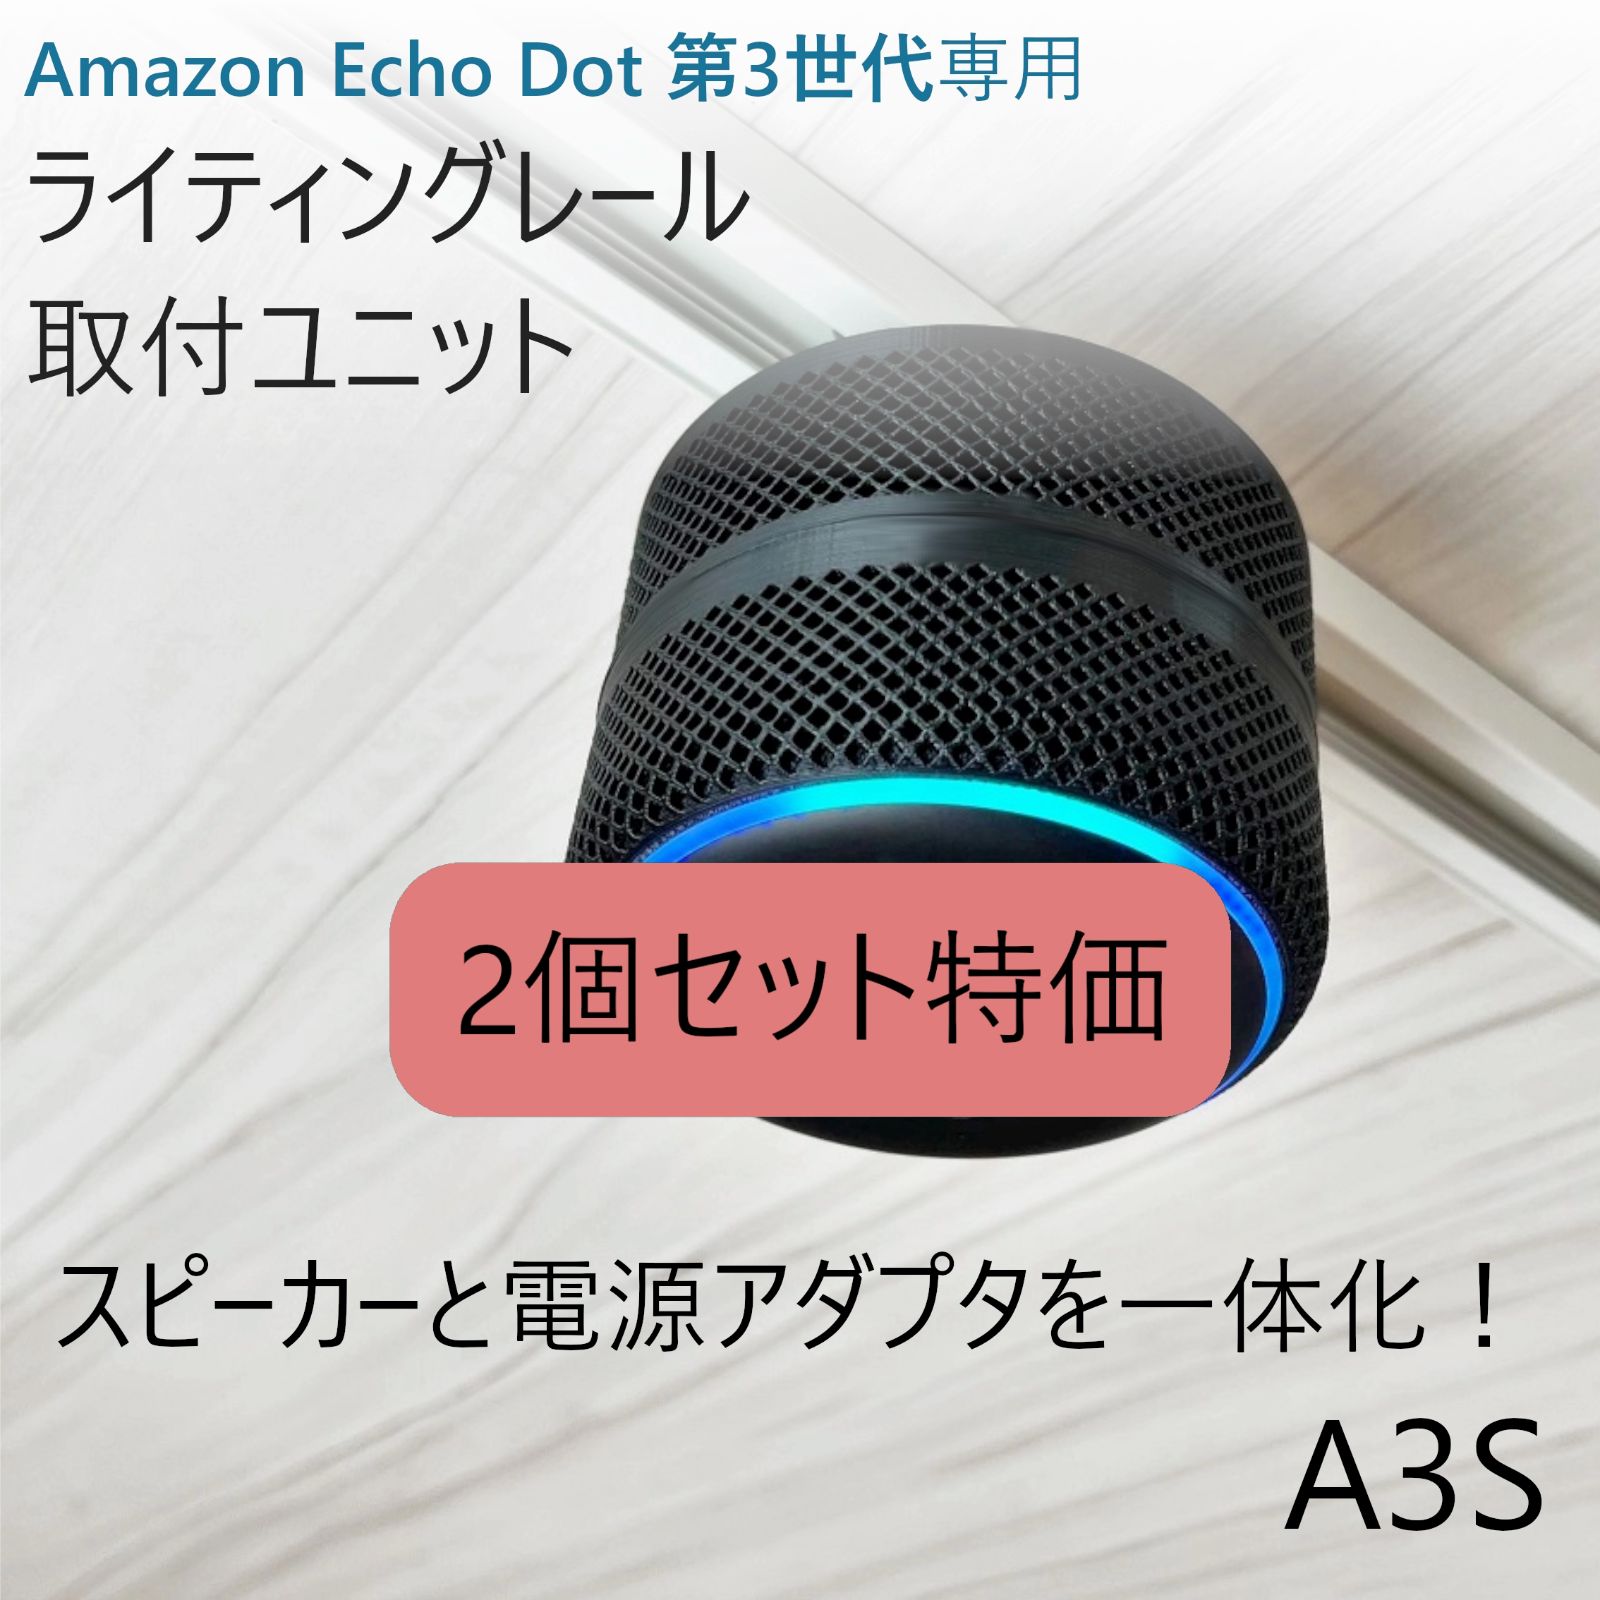 【新品】Echo dot 第3世代 2個セット